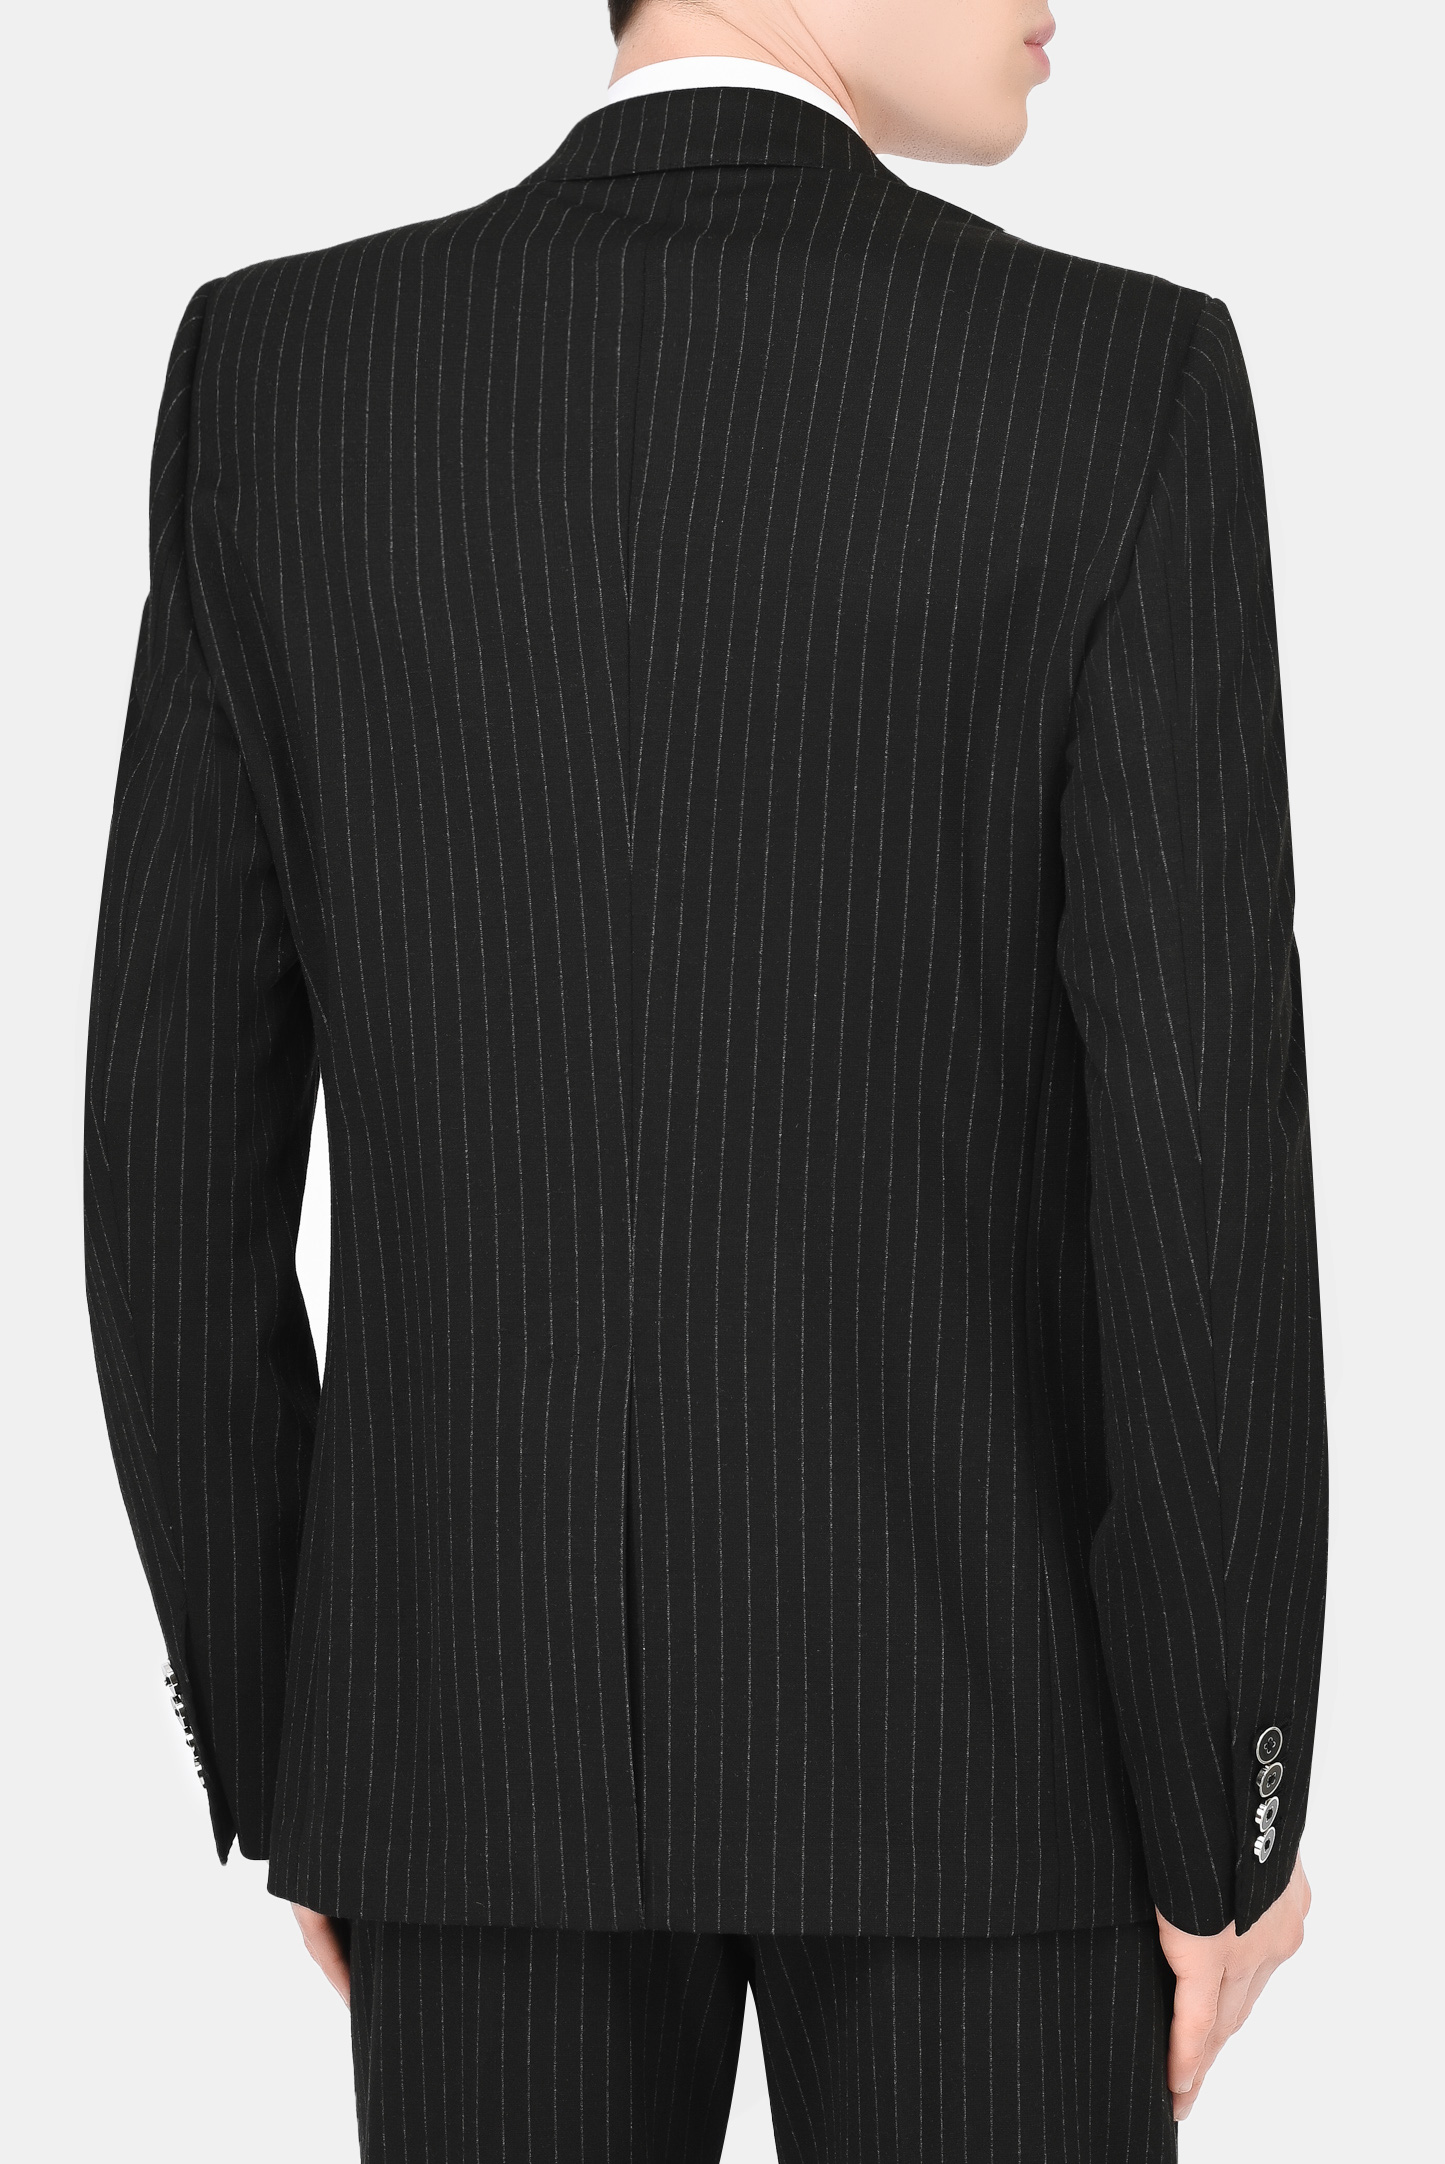 Пиджак DOLCE & GABBANA G2PT9T FRRDY, цвет: Черный, Мужской